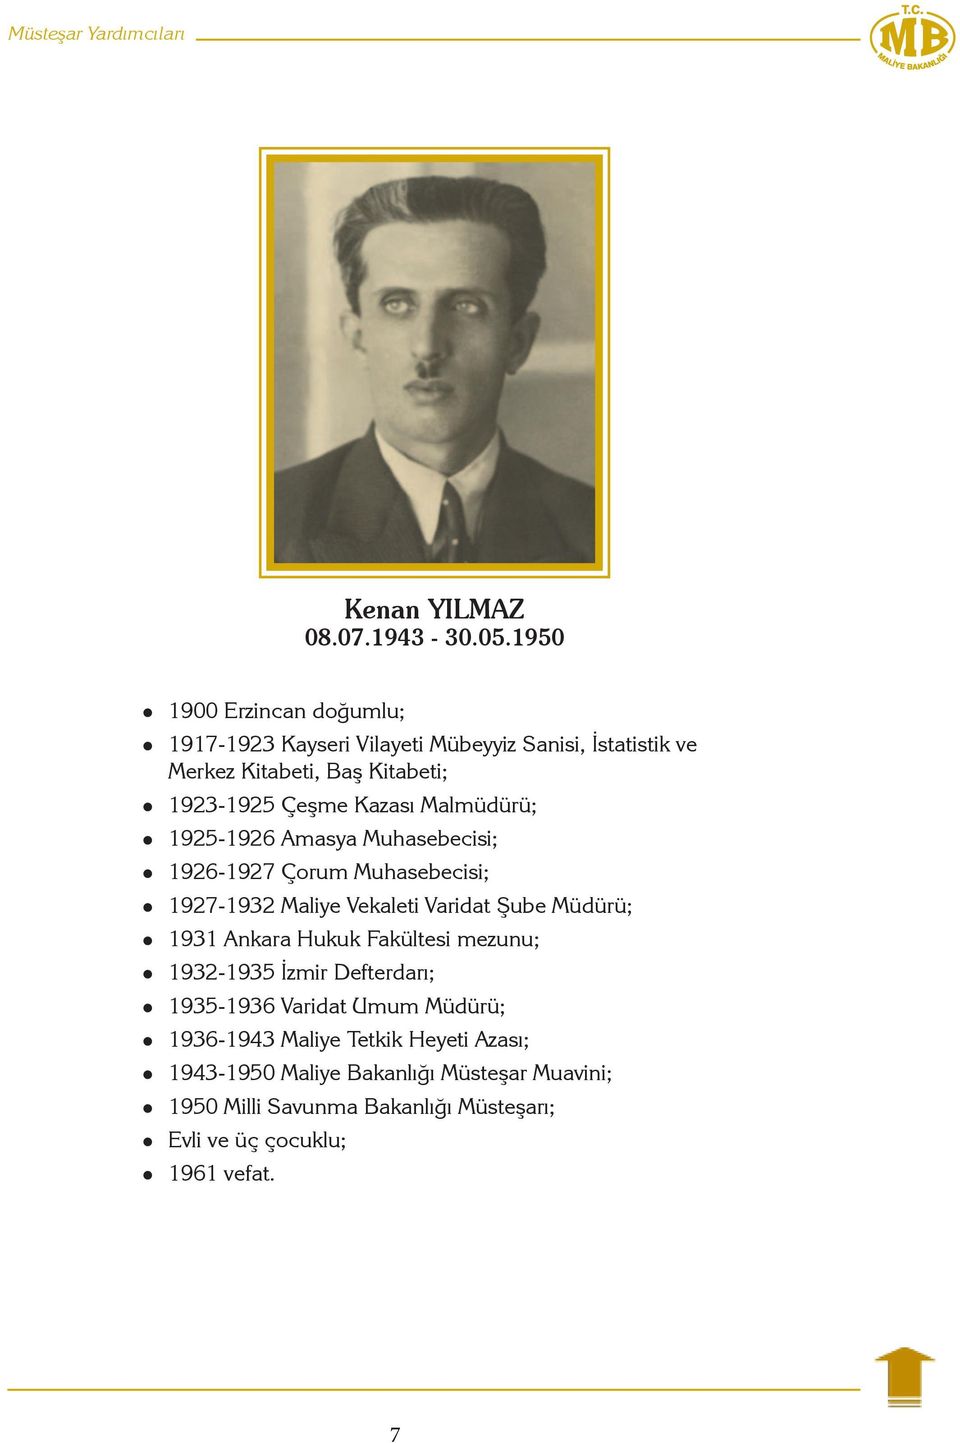 Malmüdürü; 1925-1926 Amasya Muhasebecisi; 1926-1927 Çorum Muhasebecisi; 1927-1932 Maliye Vekaleti Varidat Şube Müdürü; 1931 Ankara Hukuk